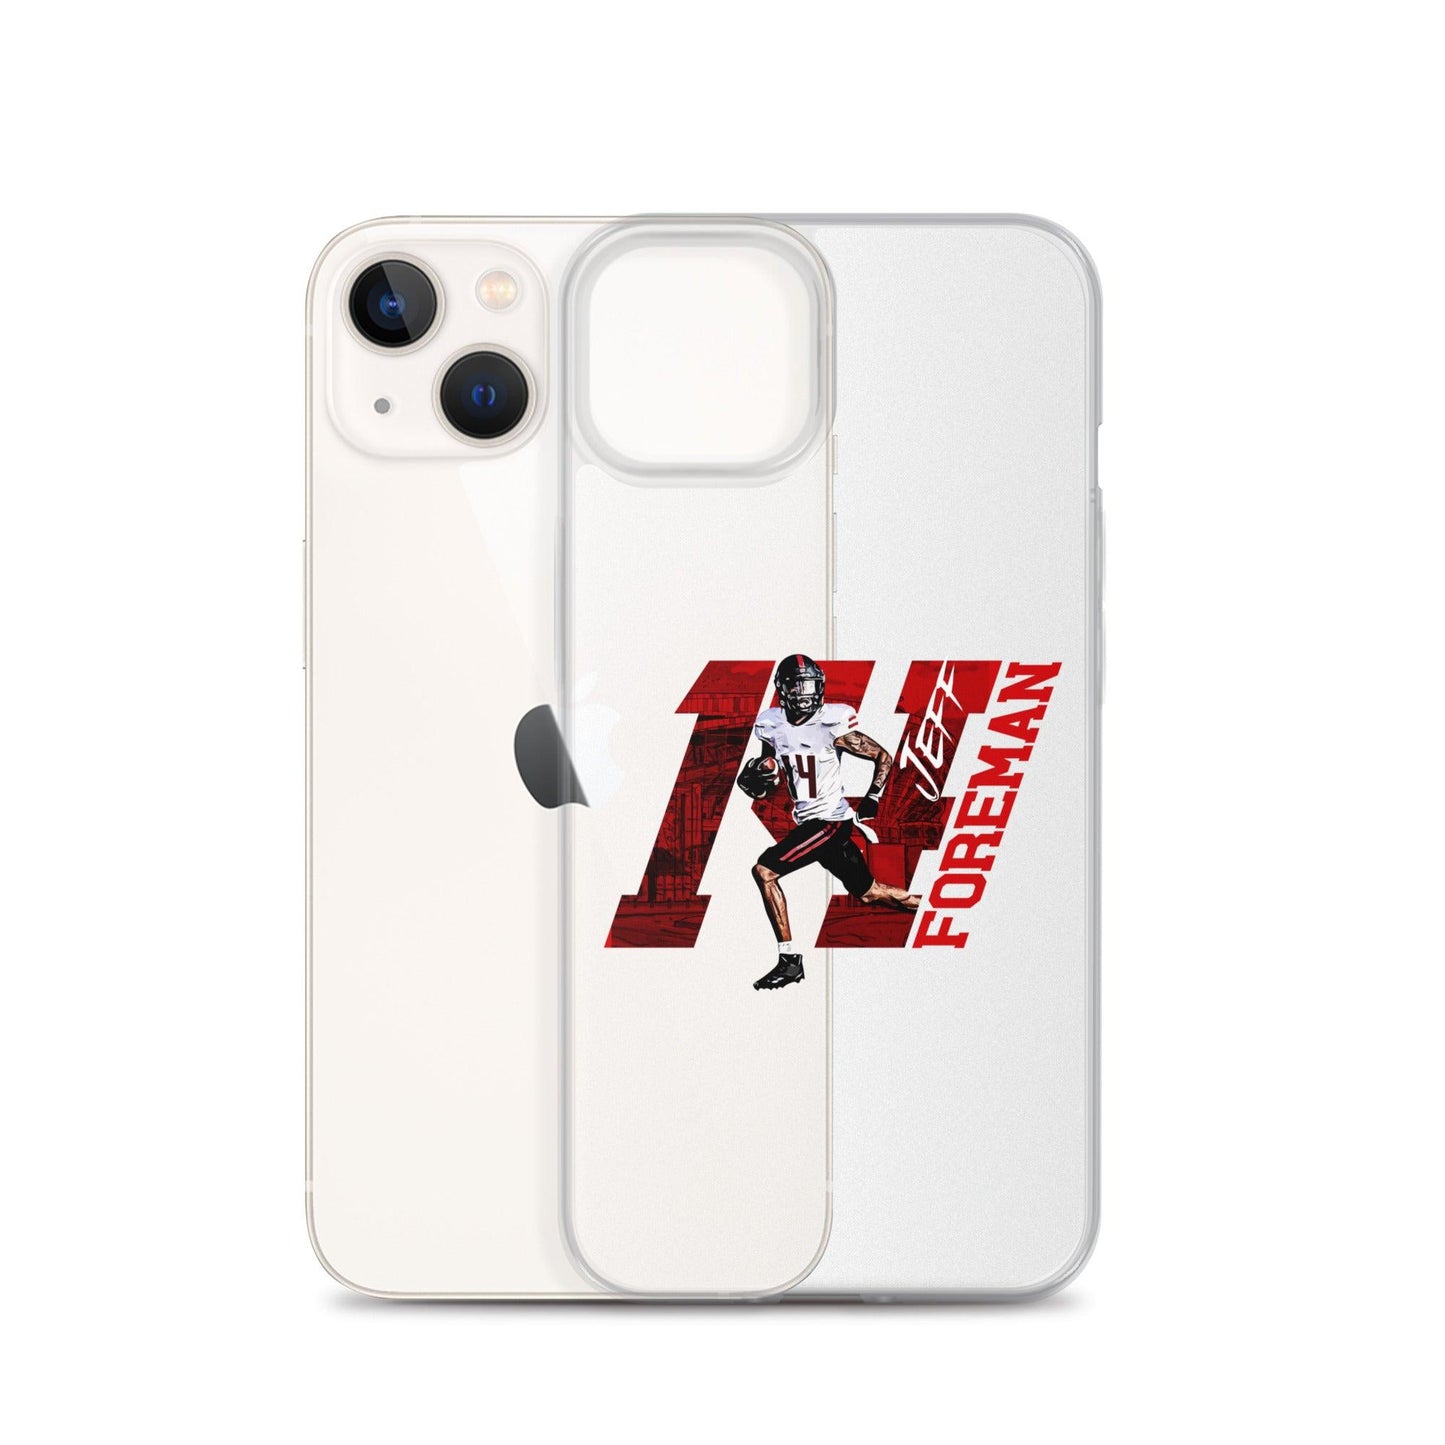 Jeff Foreman "14" iPhone Case - Fan Arch